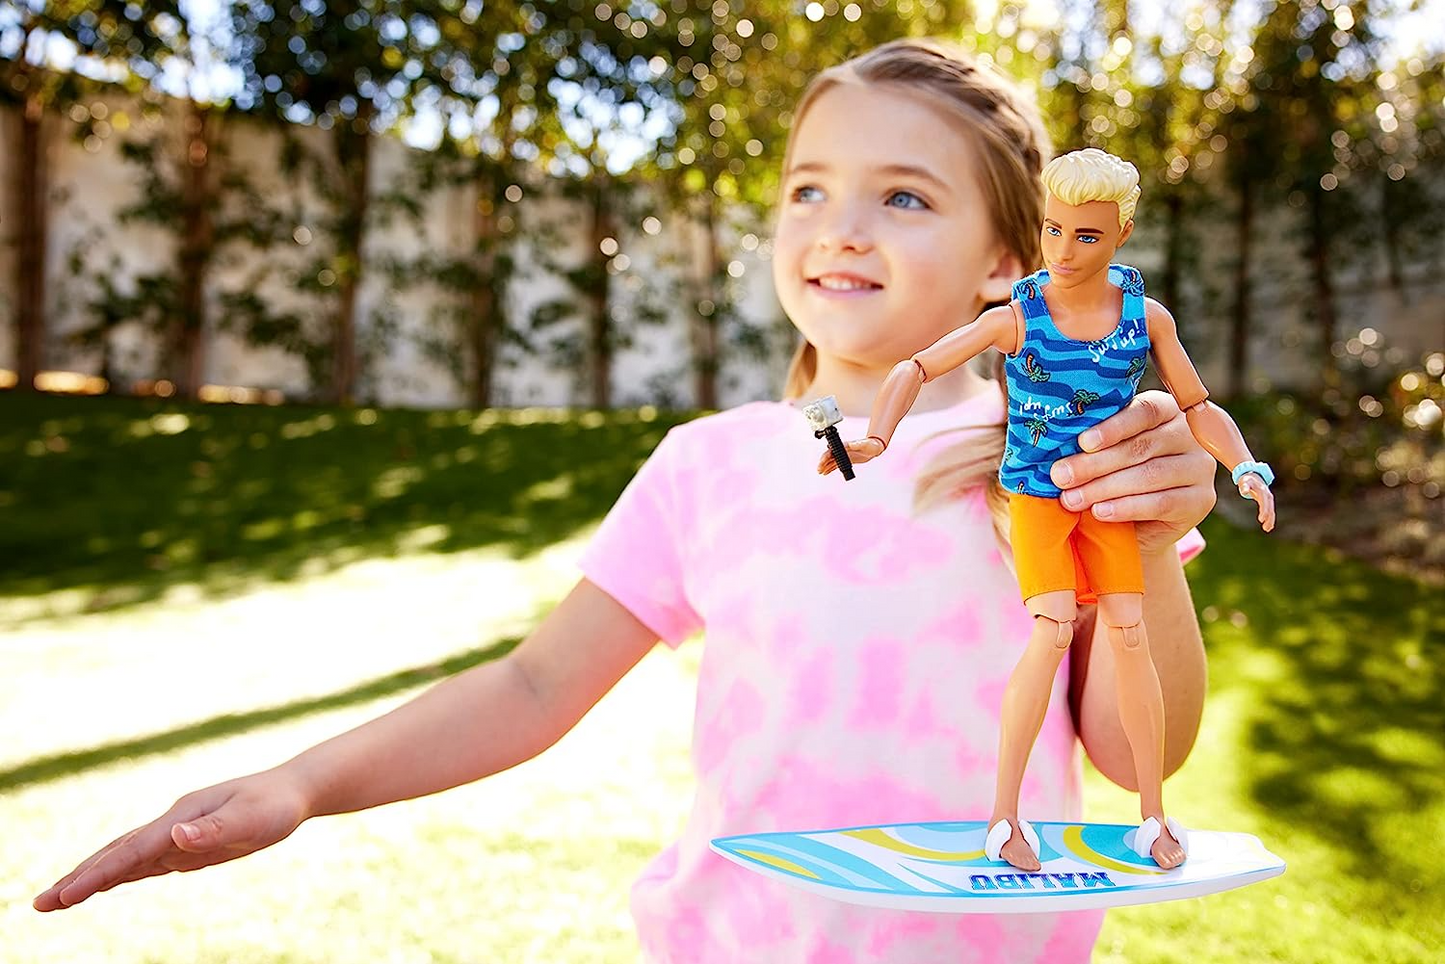 Barbie Boneca com prancha de surfe e cachorrinho de estimação, boneca